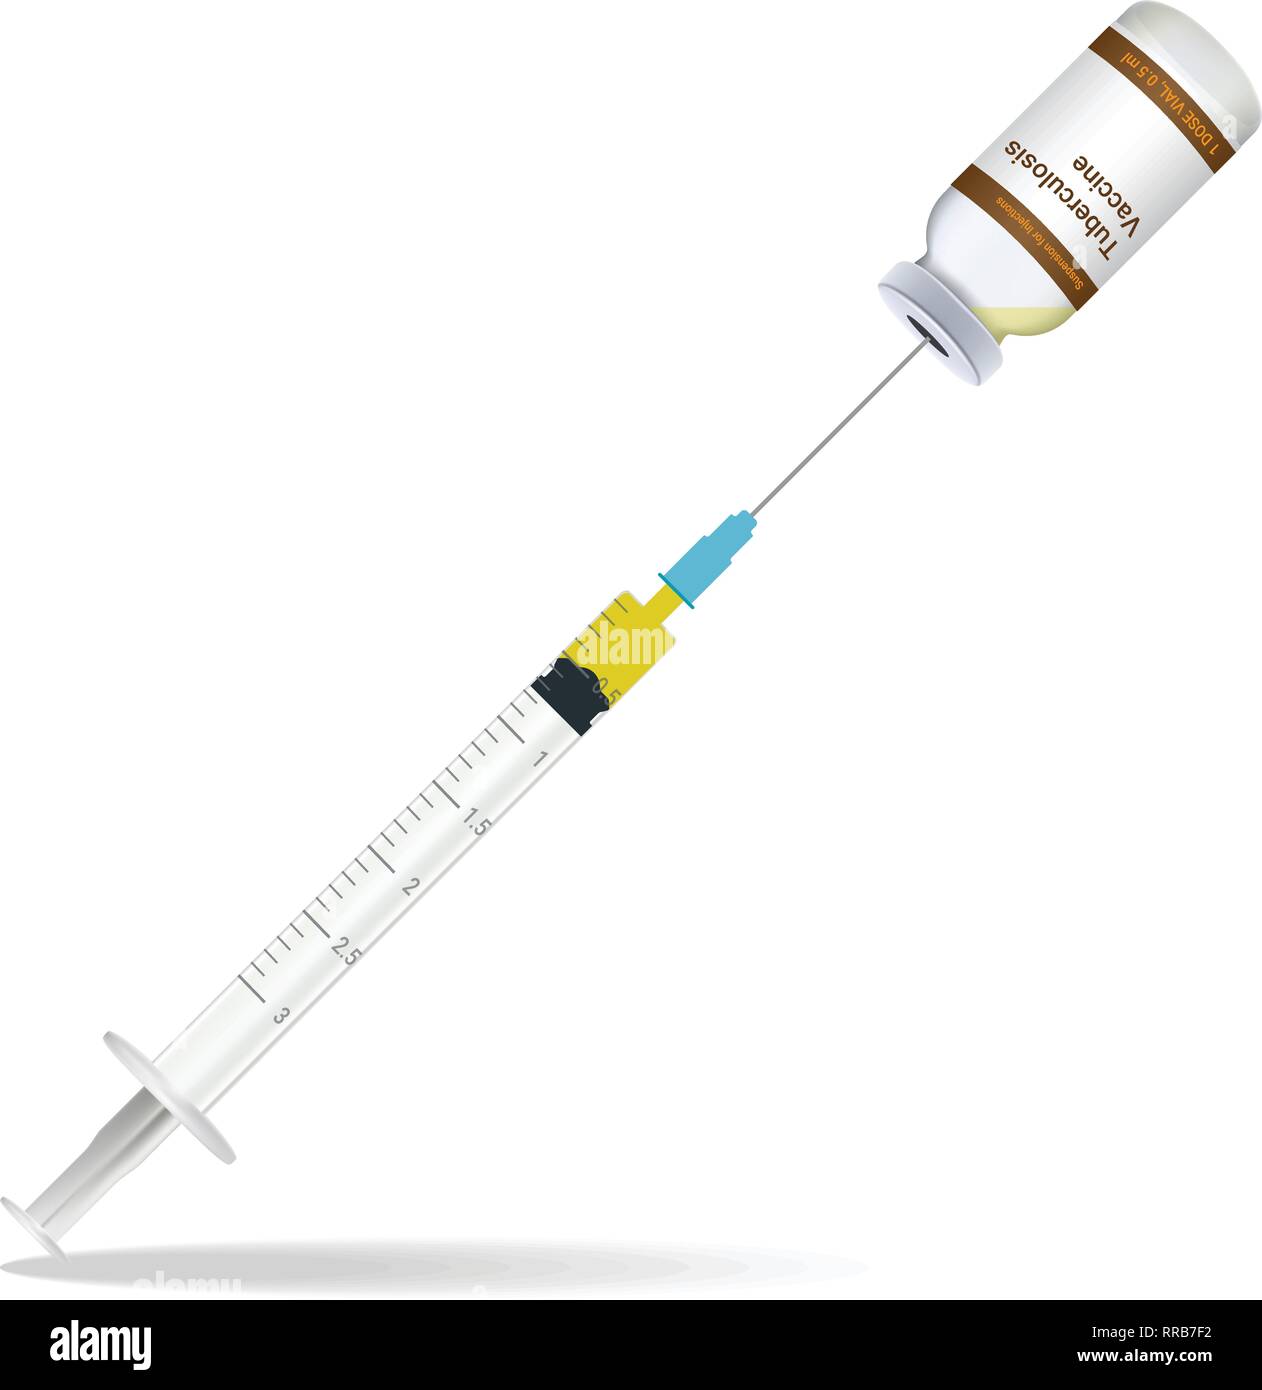 La vaccination, vaccination contre la tuberculose et d'injection seringue contiennent quelques bouteille d'injection isolé sur un fond blanc. Vector Illustration. Illustration de Vecteur